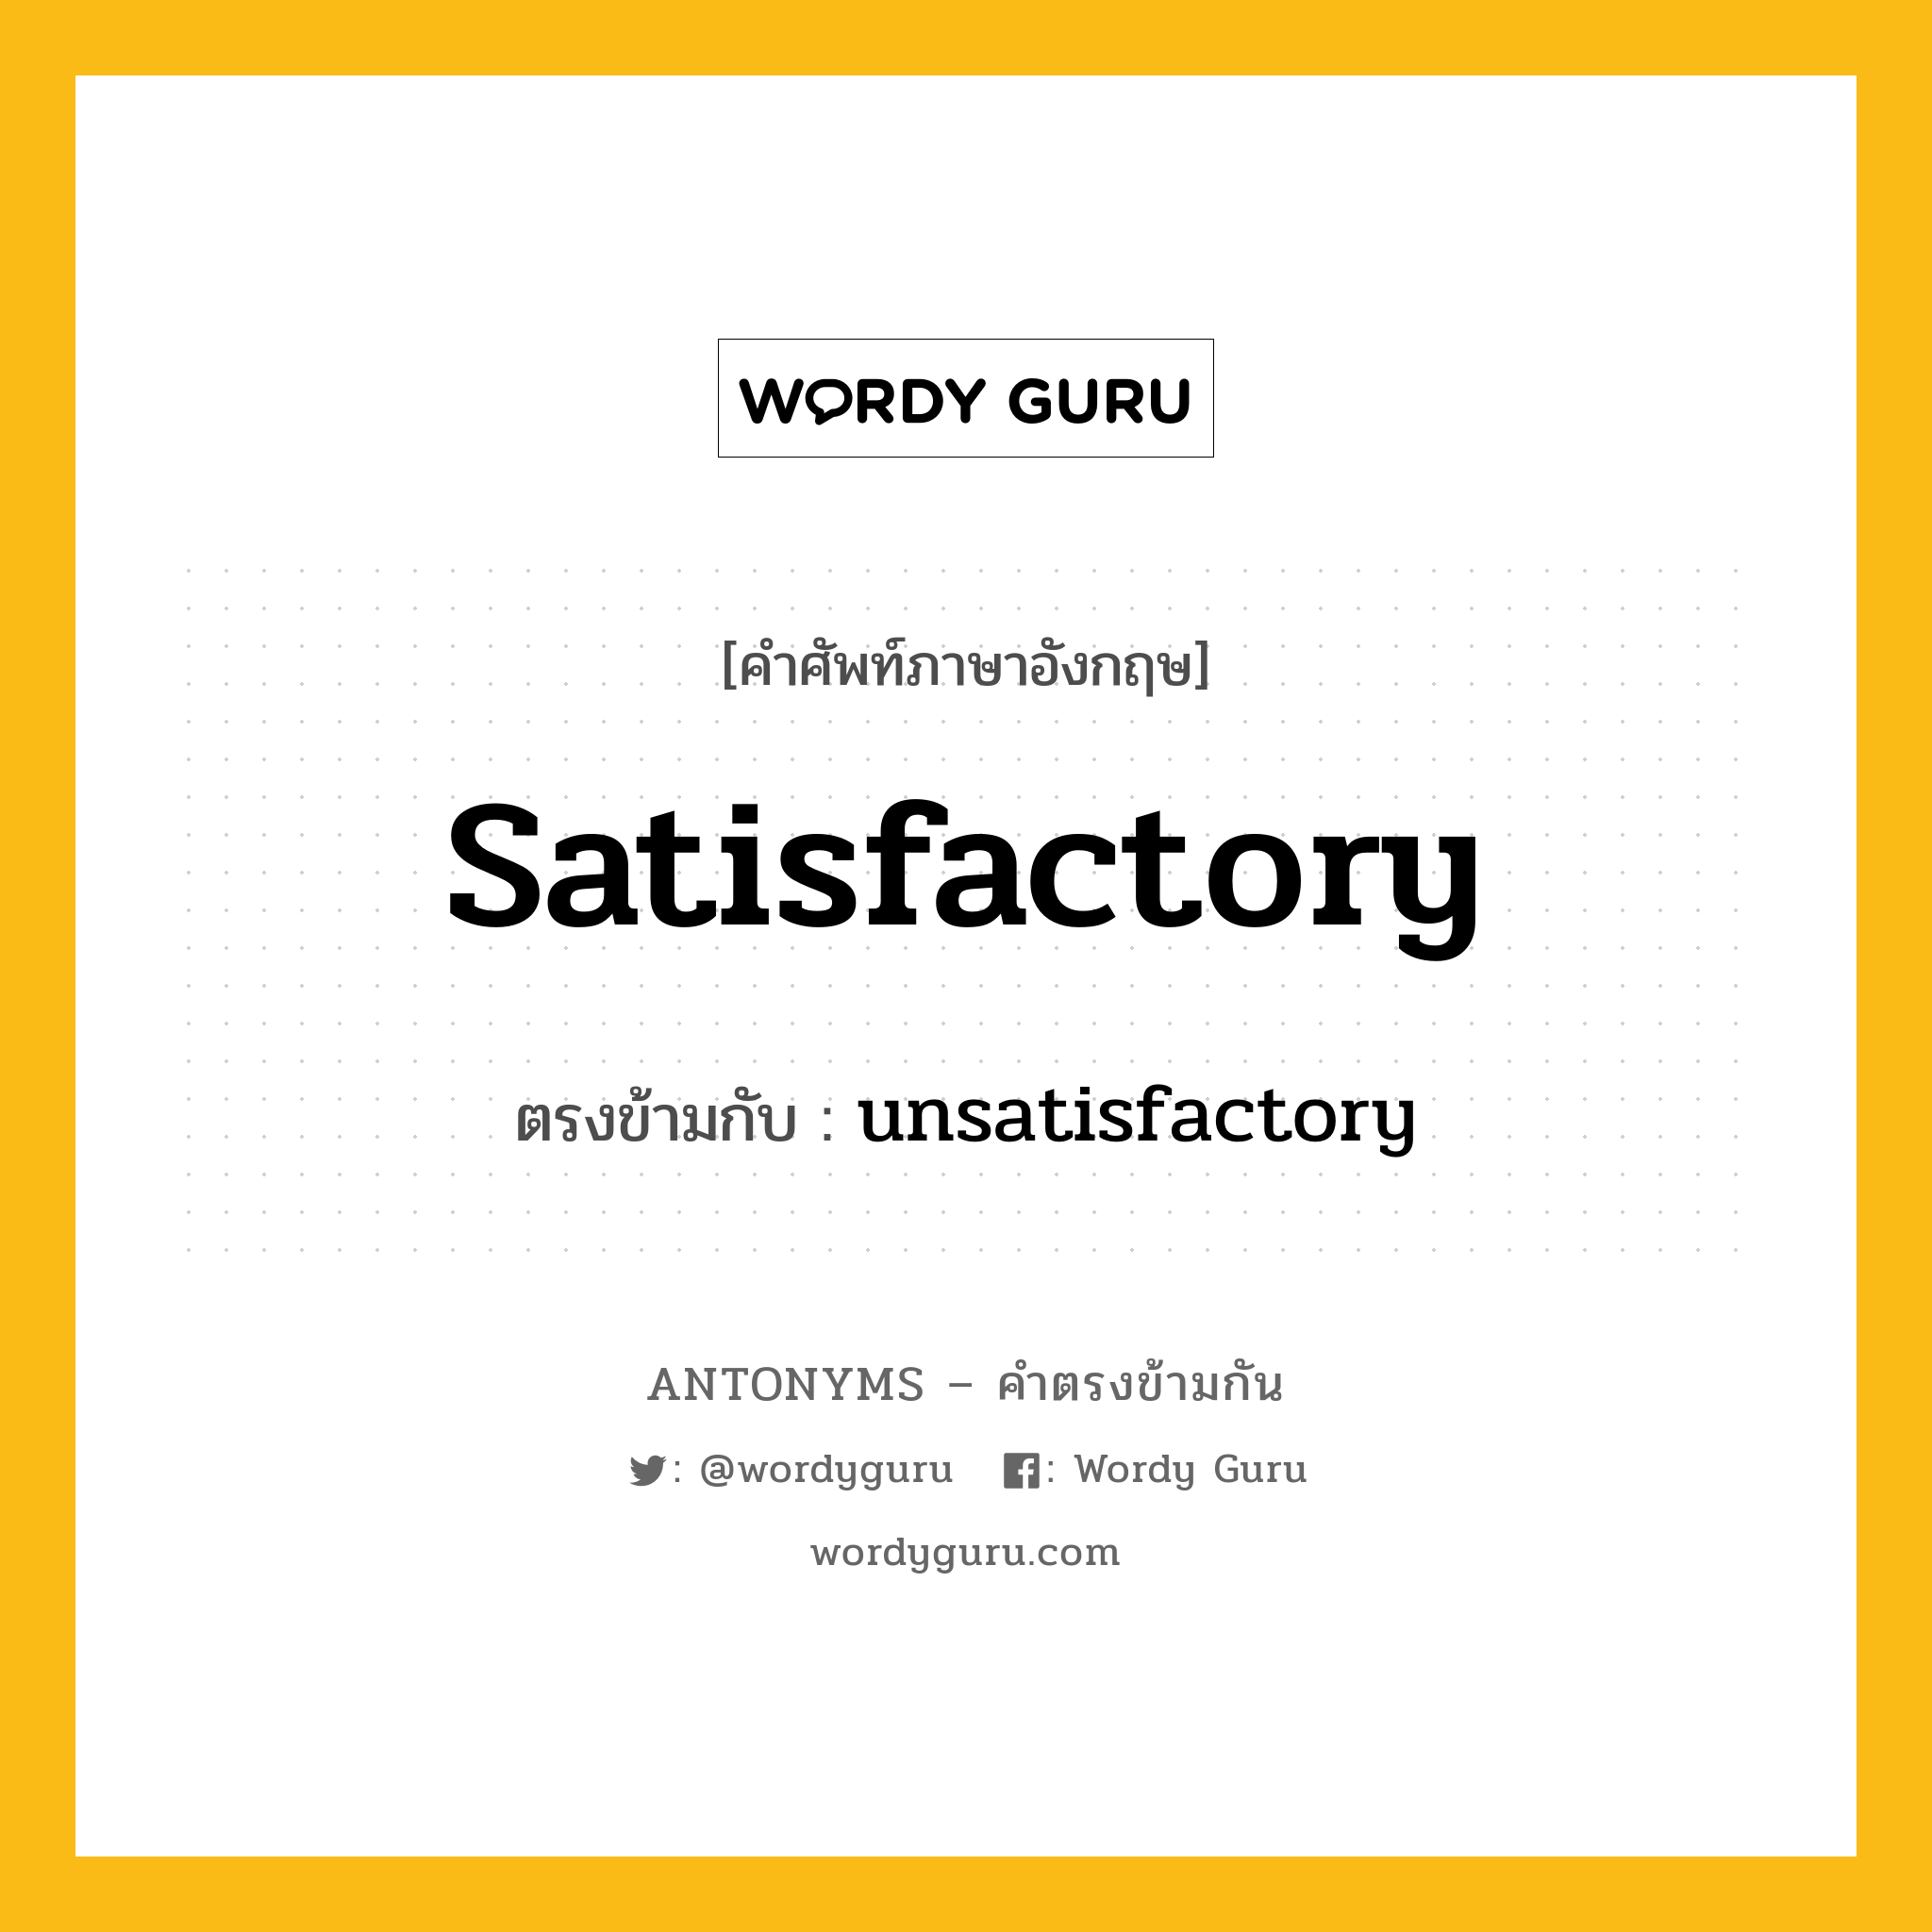 satisfactory เป็นคำตรงข้ามกับคำไหนบ้าง?, คำศัพท์ภาษาอังกฤษ satisfactory ตรงข้ามกับ unsatisfactory หมวด unsatisfactory